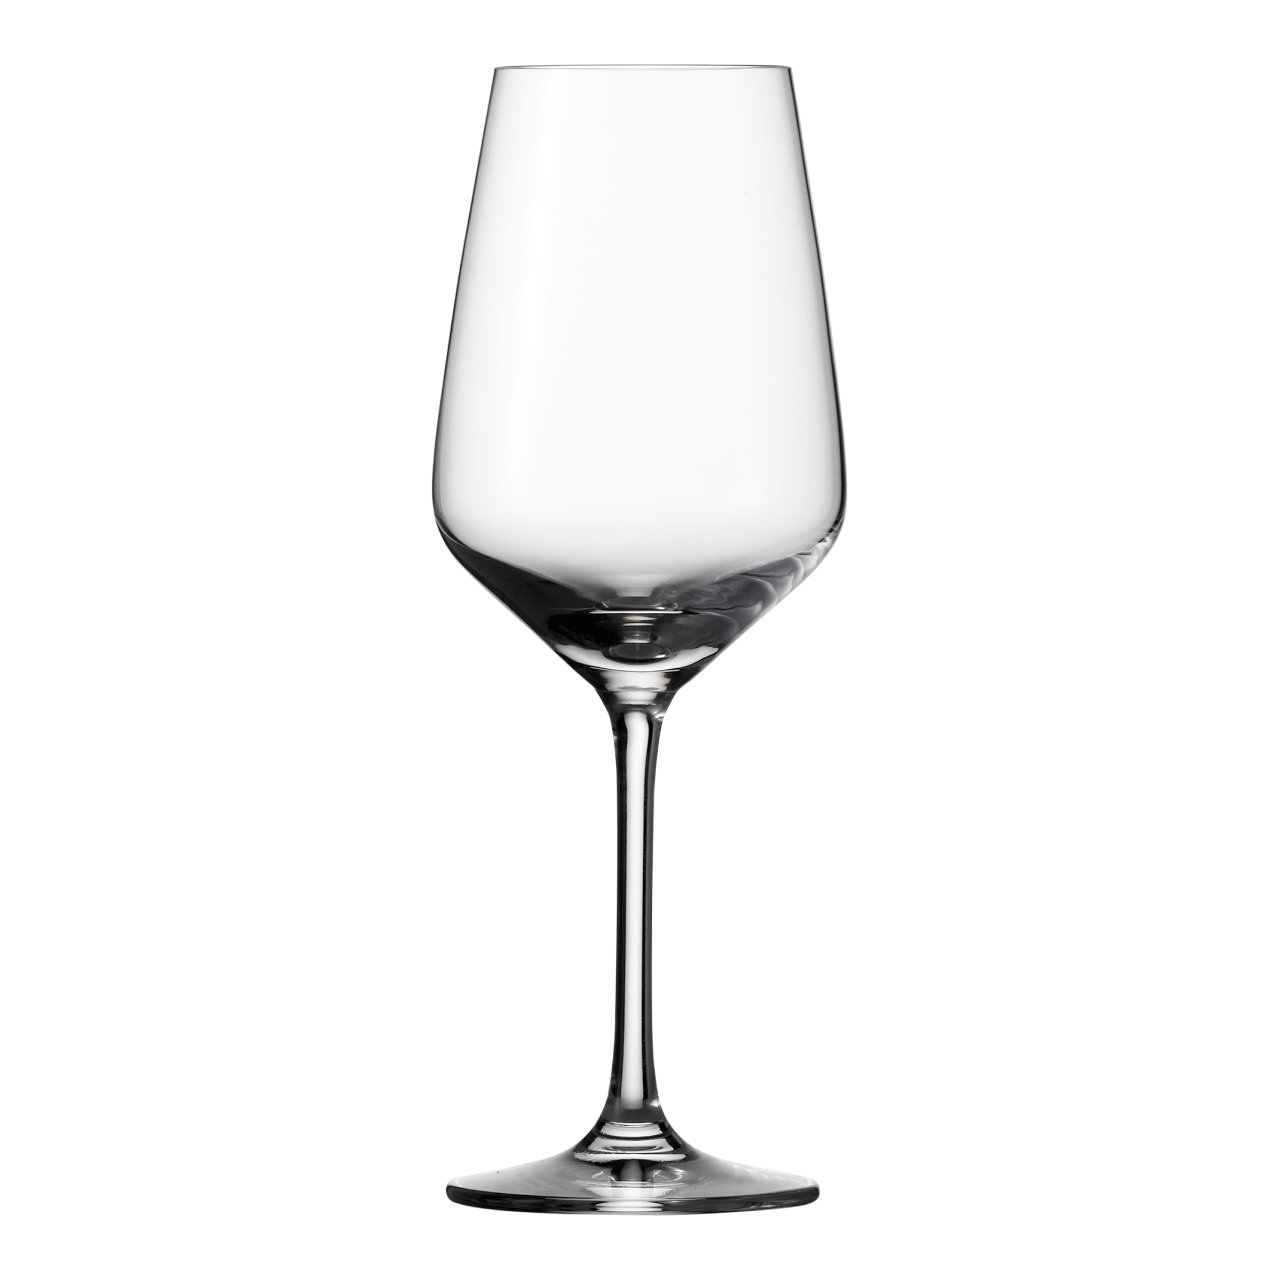 Schott Zwiesel Taste Witte wijnglas 35.6 Doos 6 stuks | Sligro.nl